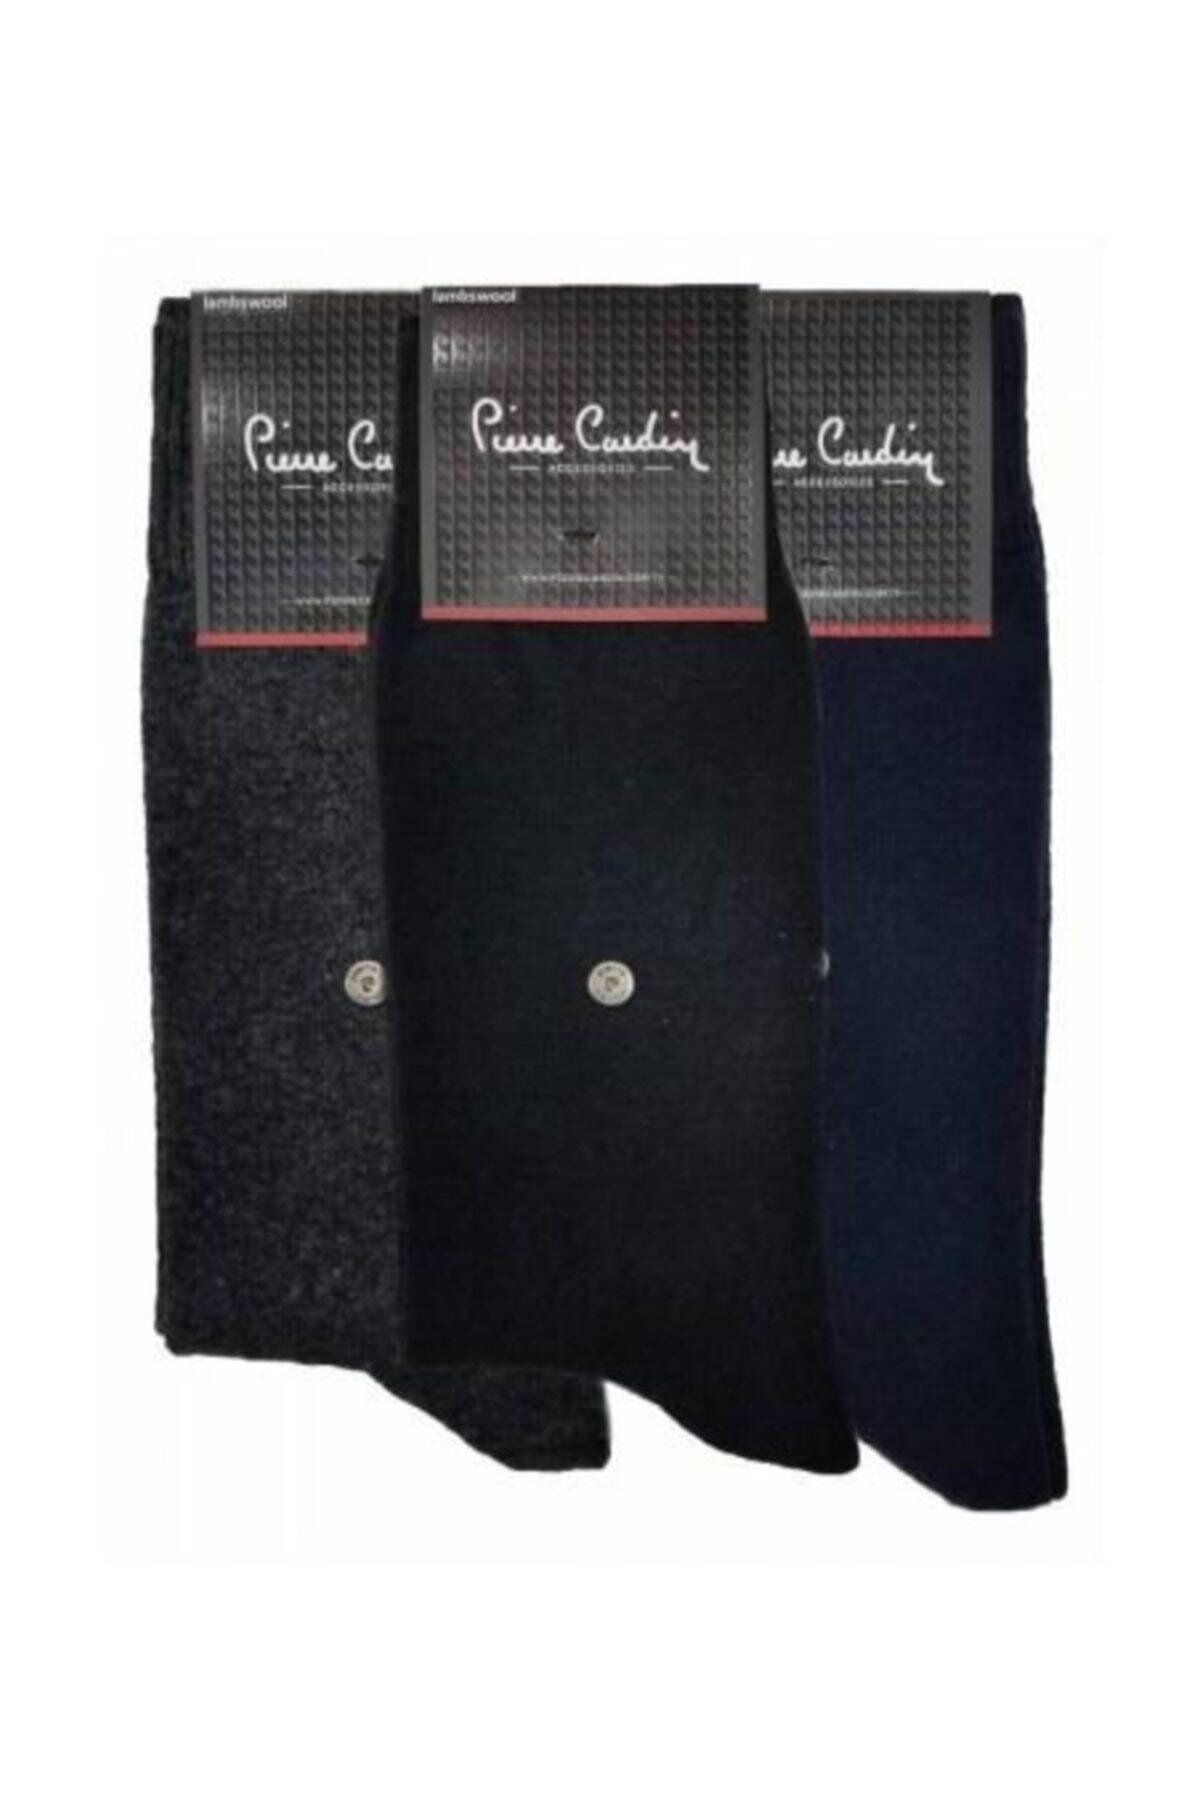 Pierre Cardin Thermal 3 Lü Erkek Gerçek Yün ince sıcak Tutar Lambswool Çorap